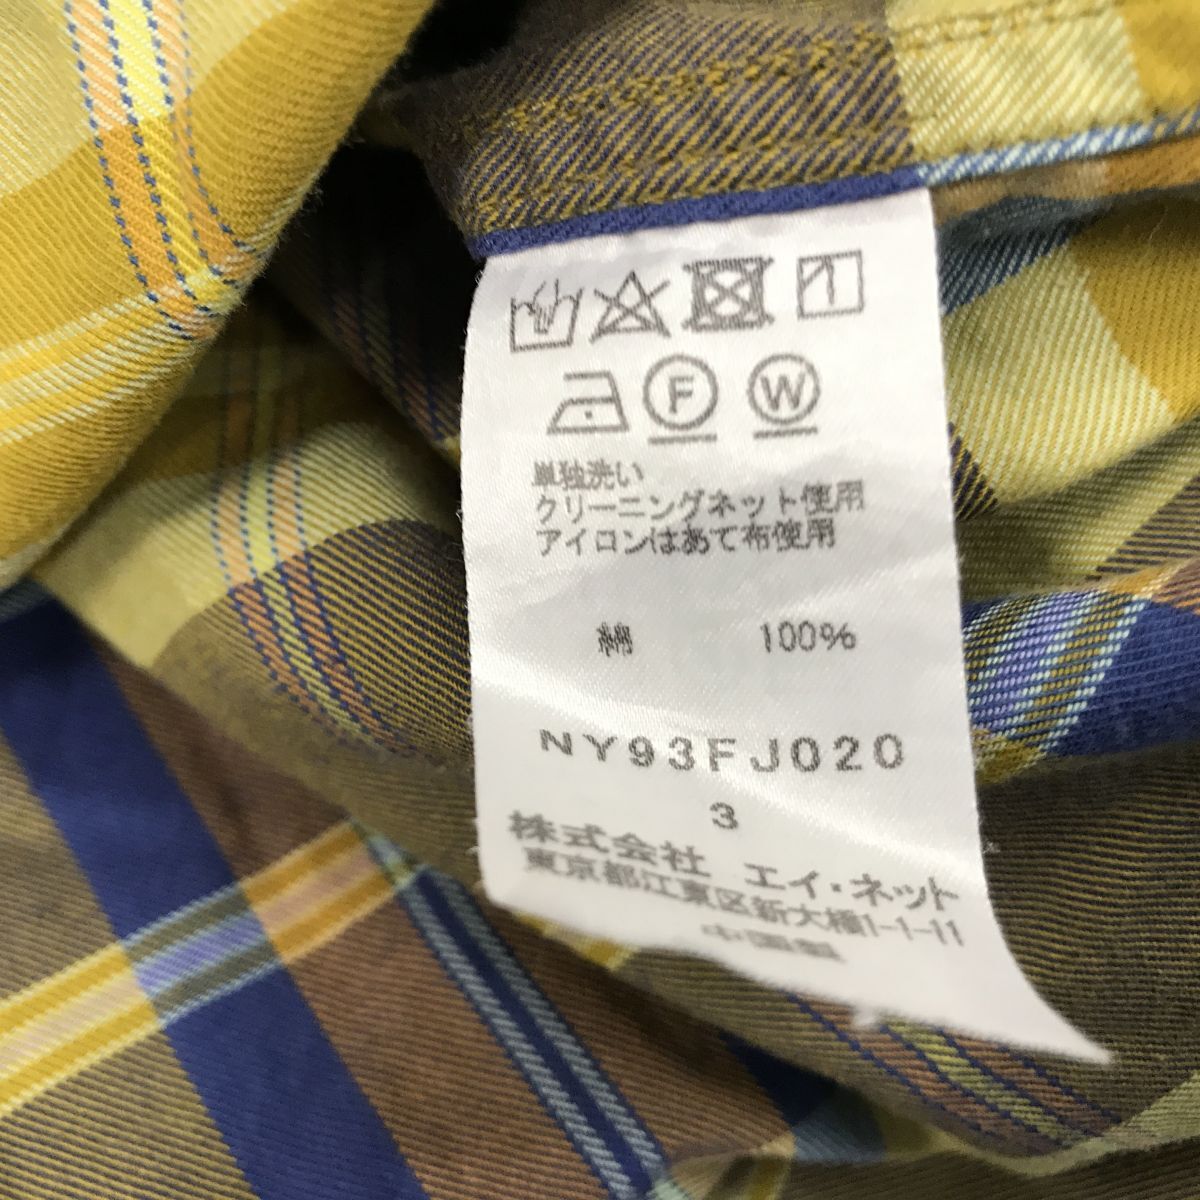 A2597-D* прекрасный товар * Ne-net Ne-Net ..- рубашка с длинным рукавом свободно Logo вышивка унисекс * size3 оттенок желтого мульти- проверка хлопок 